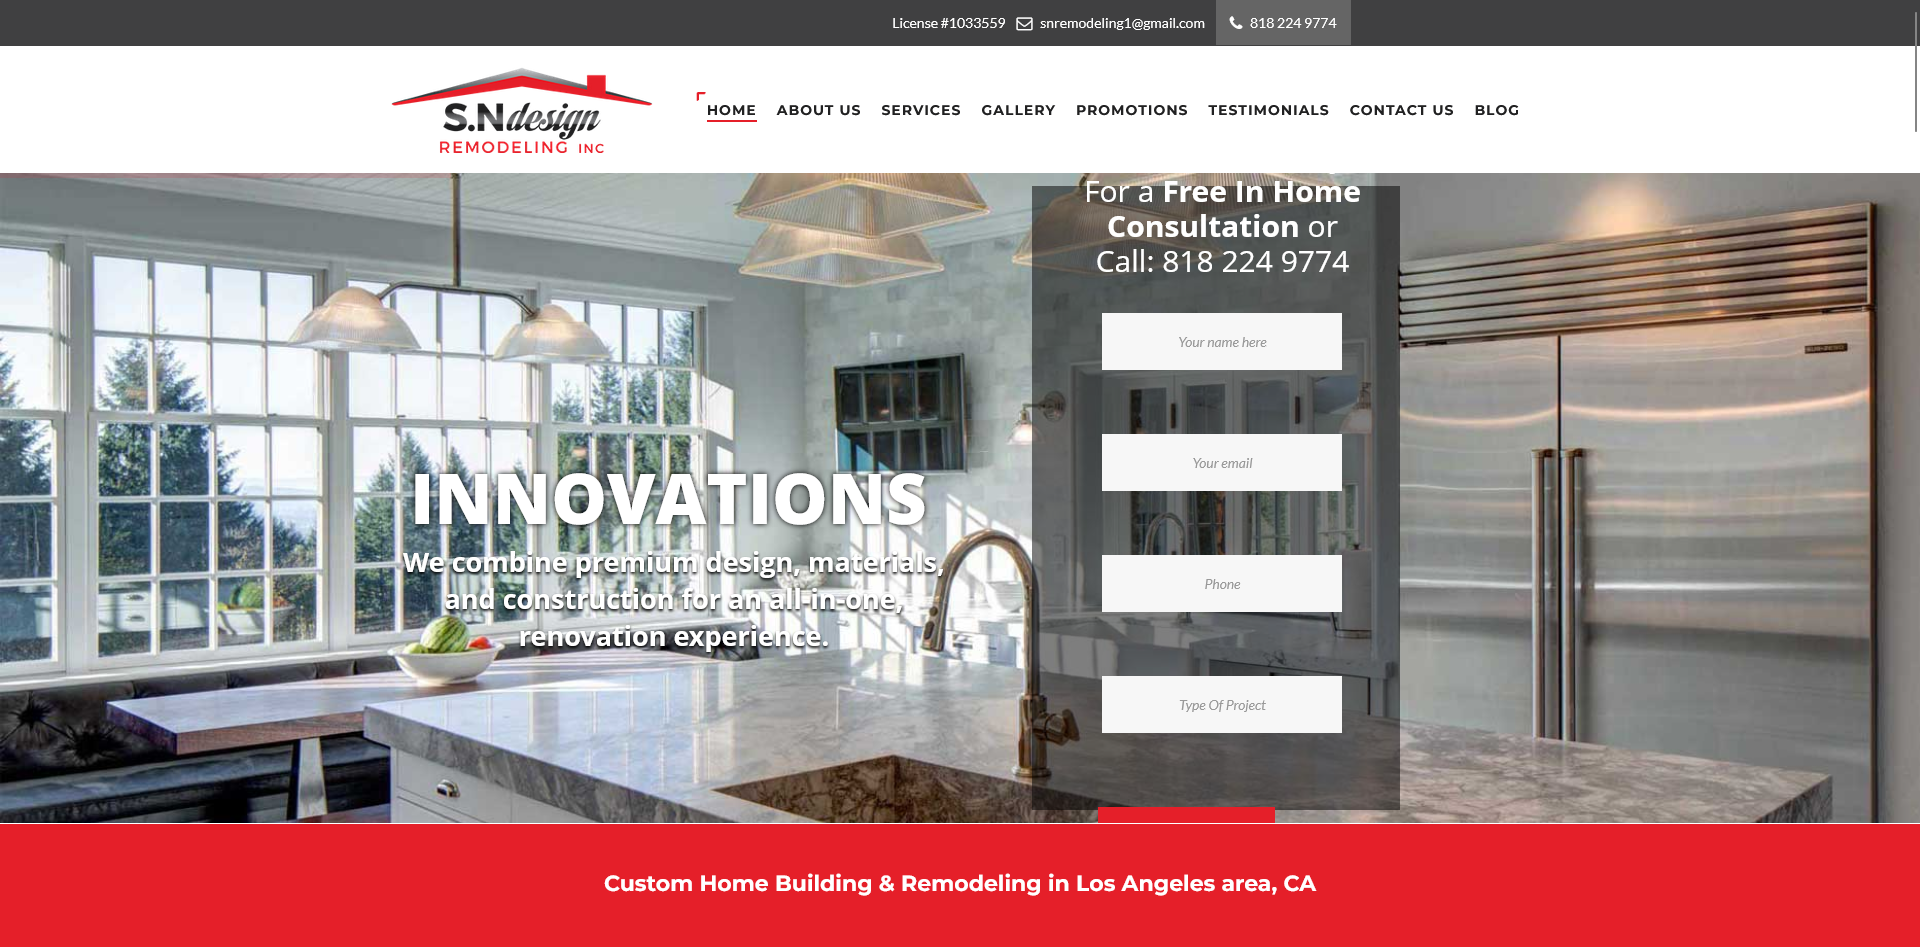 S. N Design Remodeling Inc. - Home